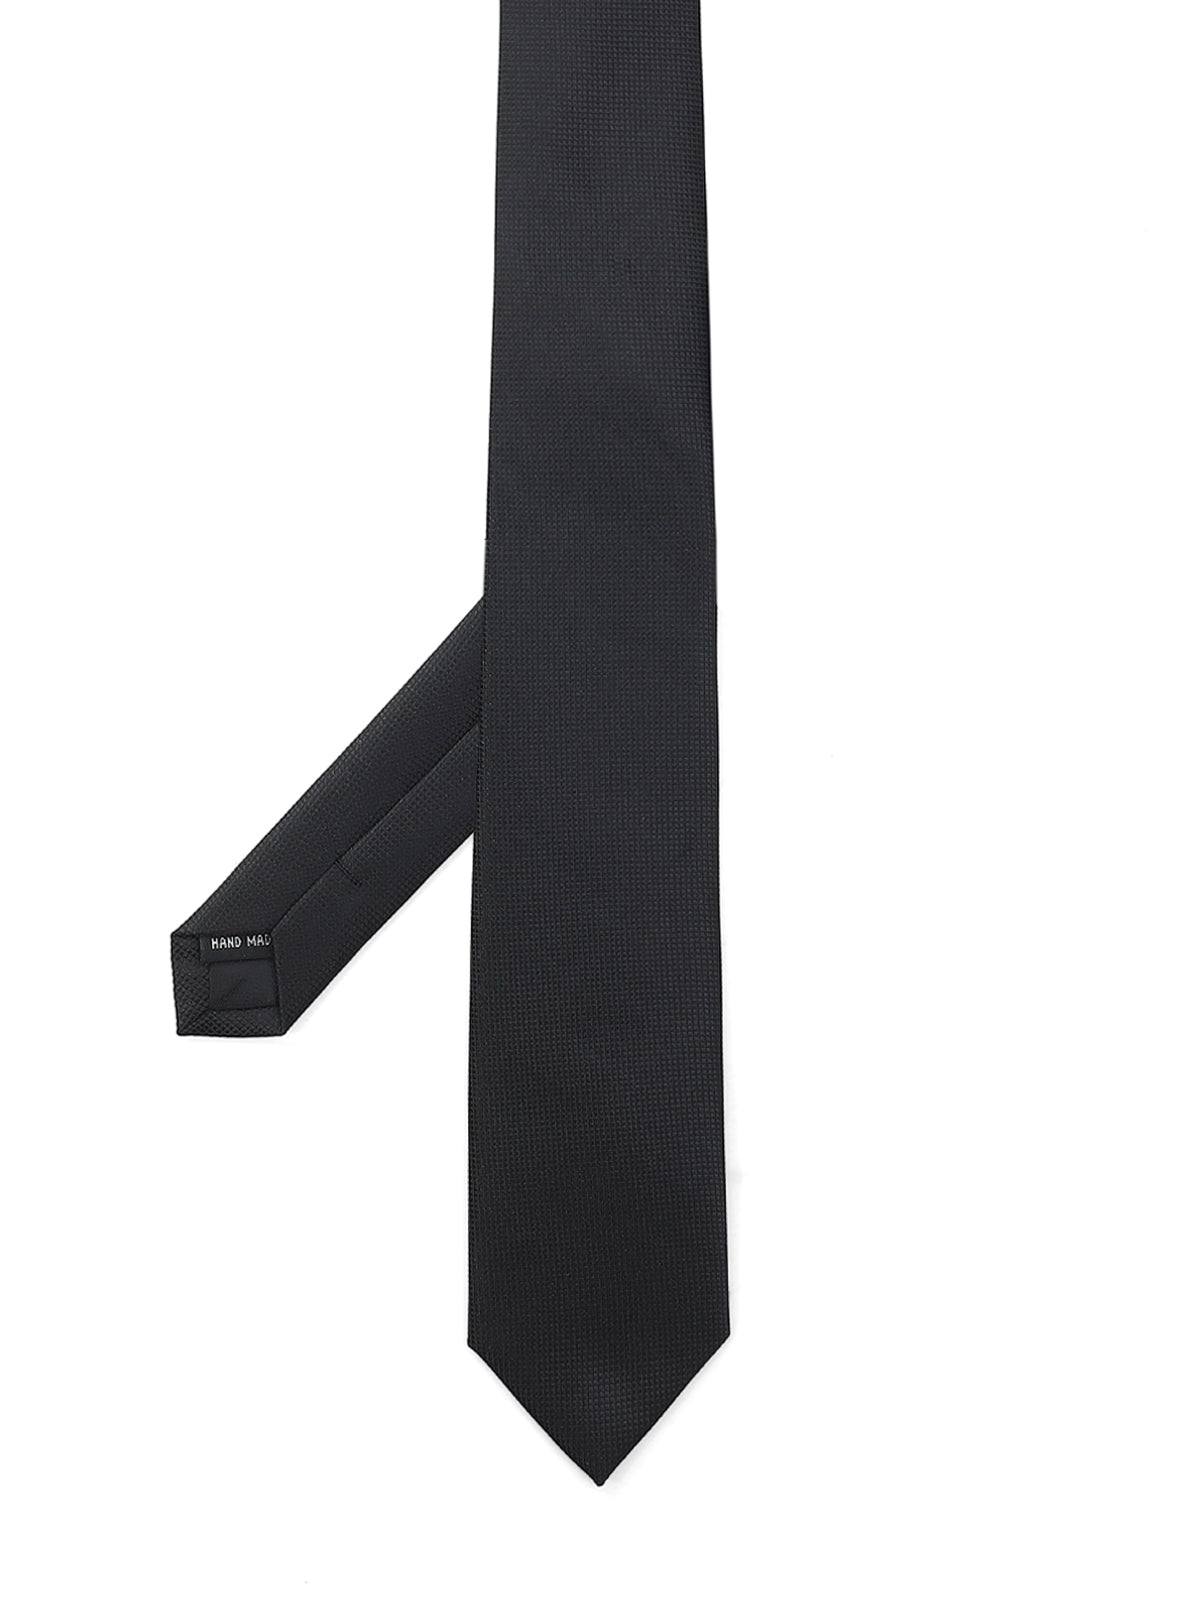 Black Tie - EAMT24-018